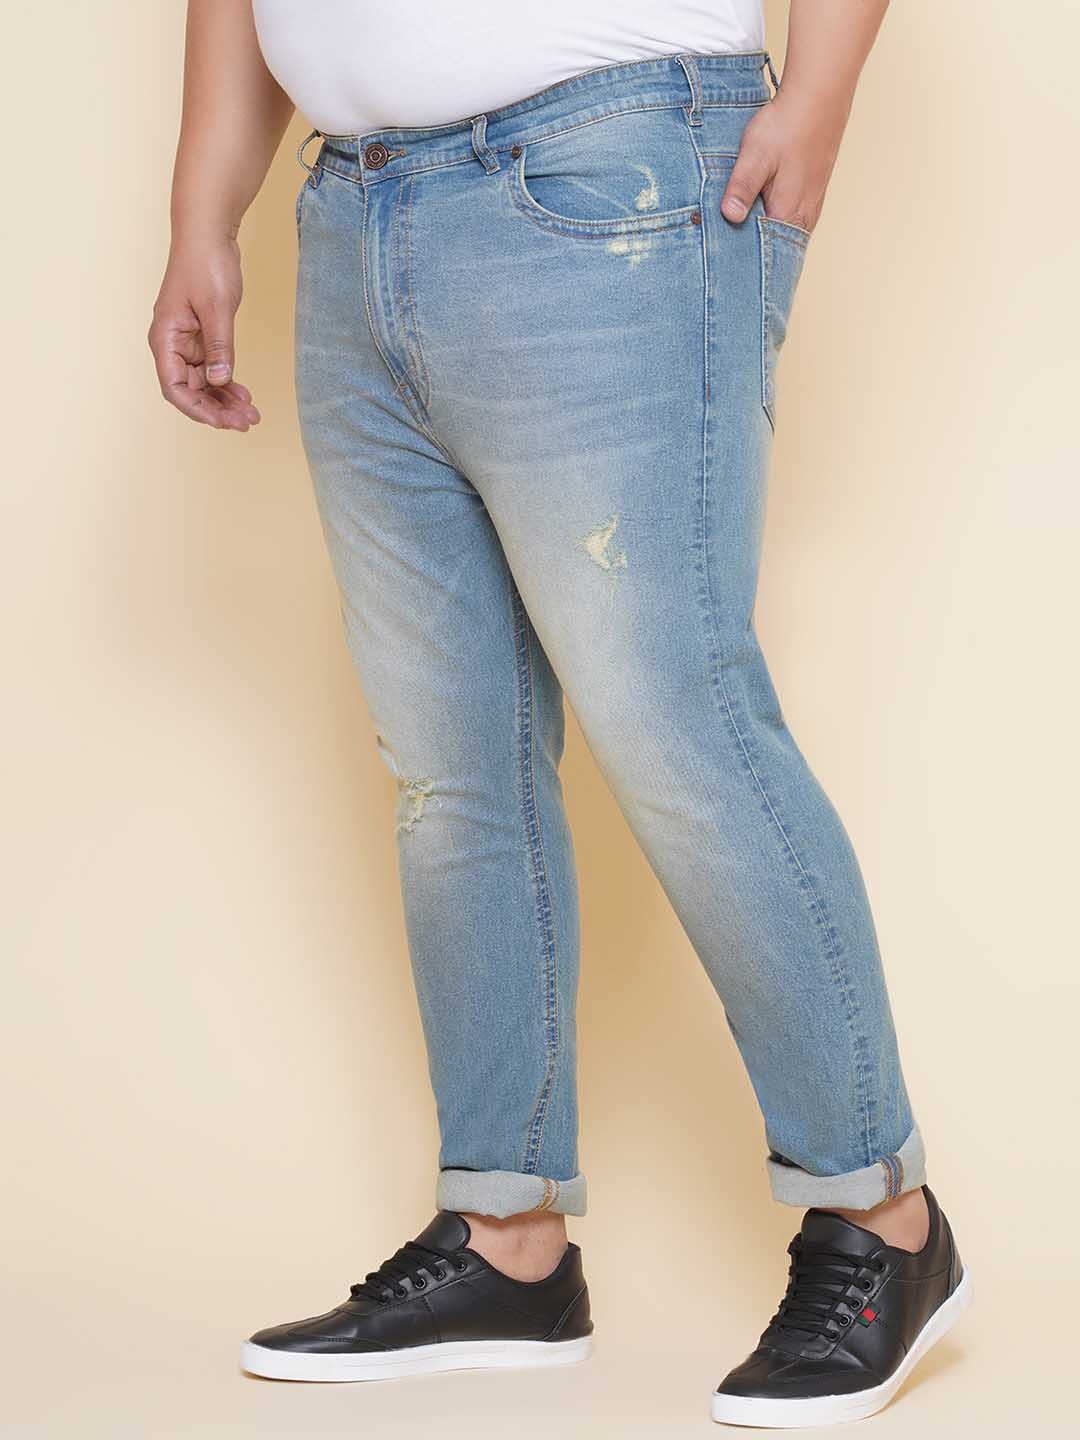 bottomwear/jeans/EJPJ25141/ejpj25141-4.jpg